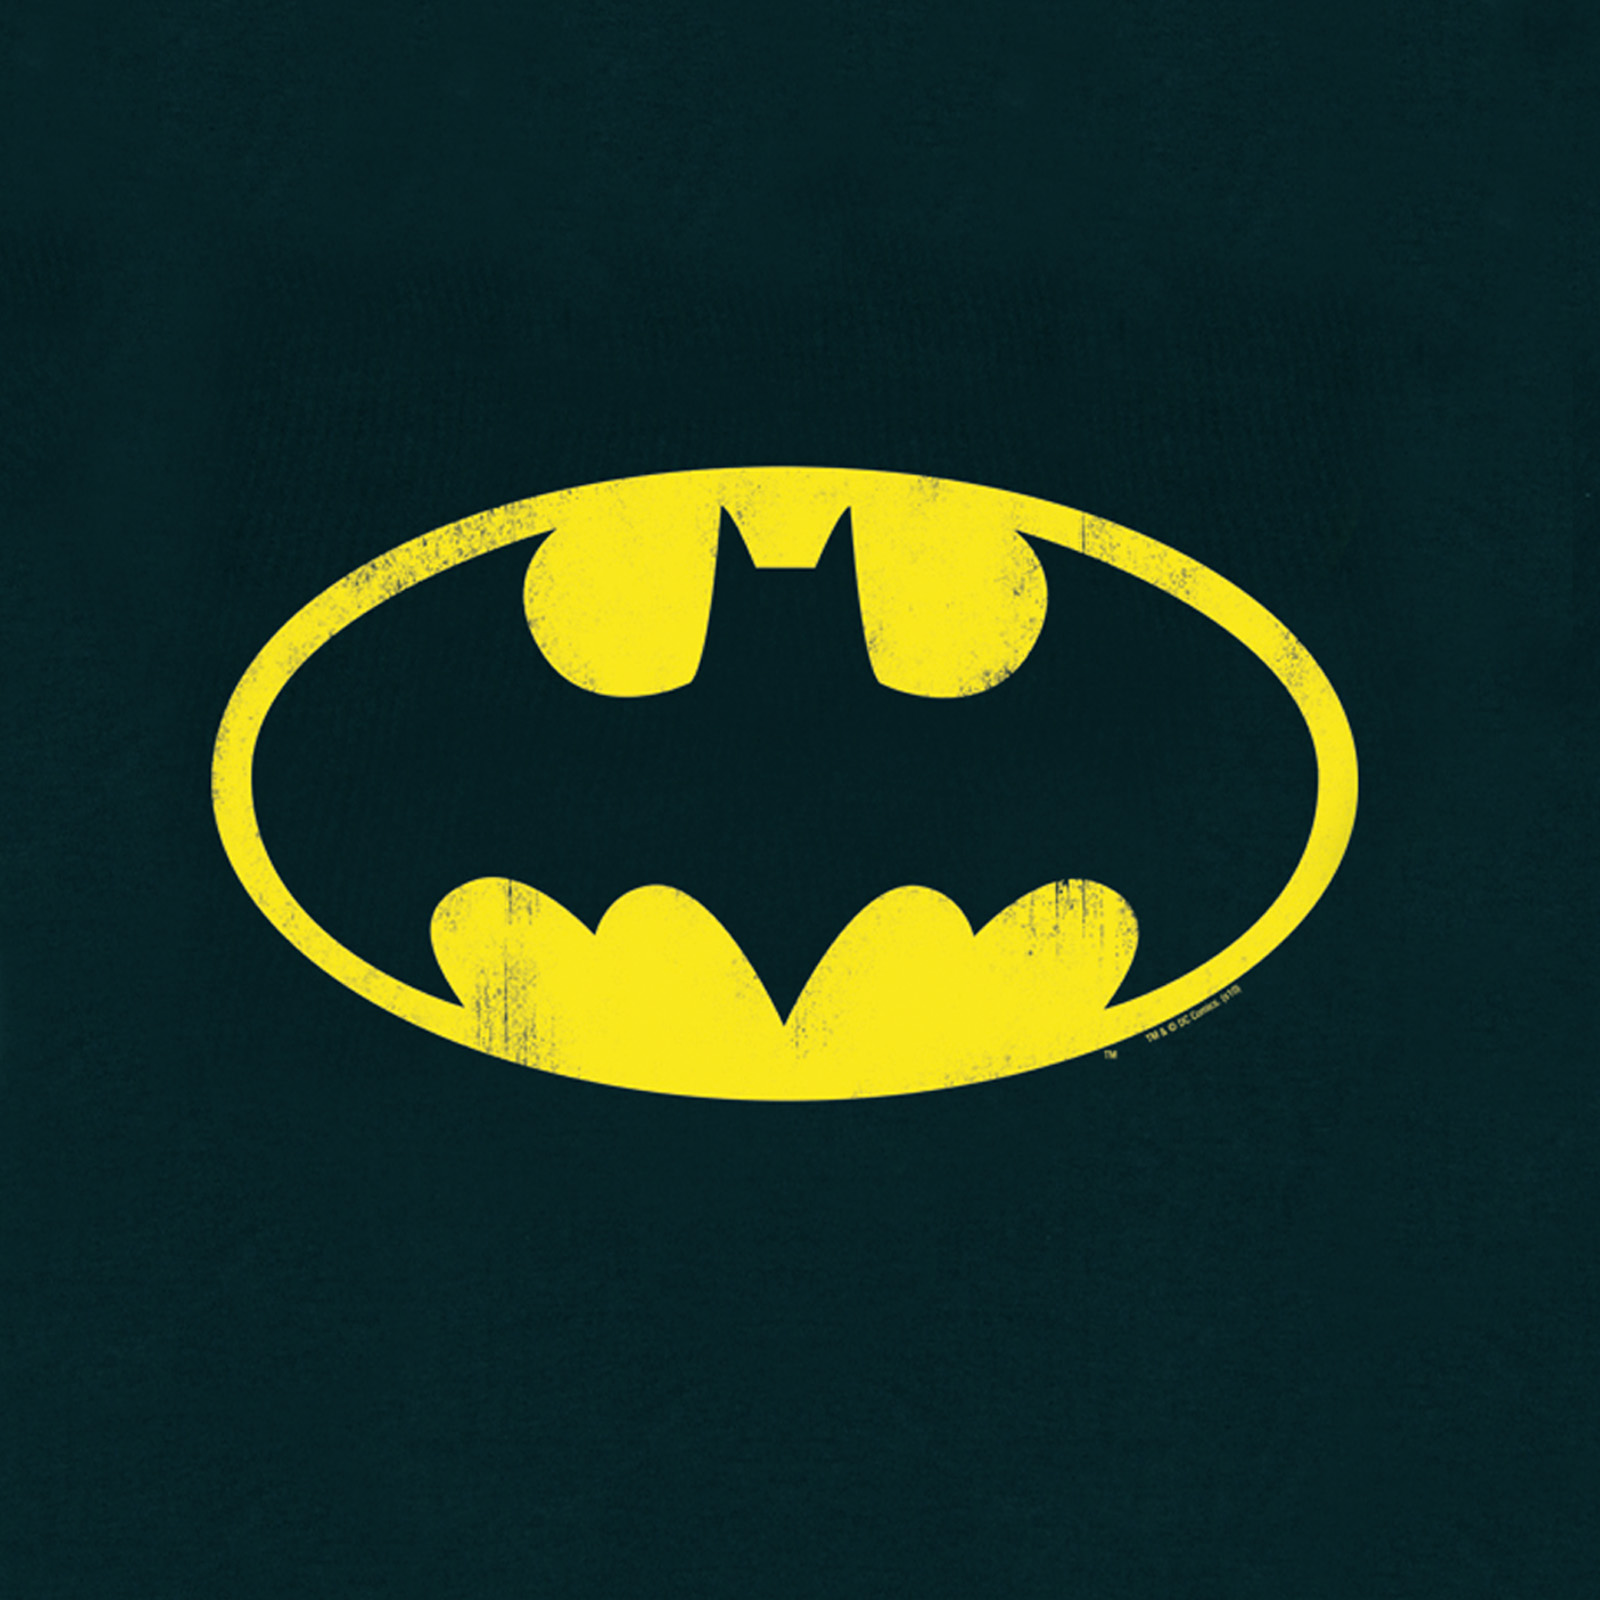 Batman - Logo T-Shirt für Kinder schwarz